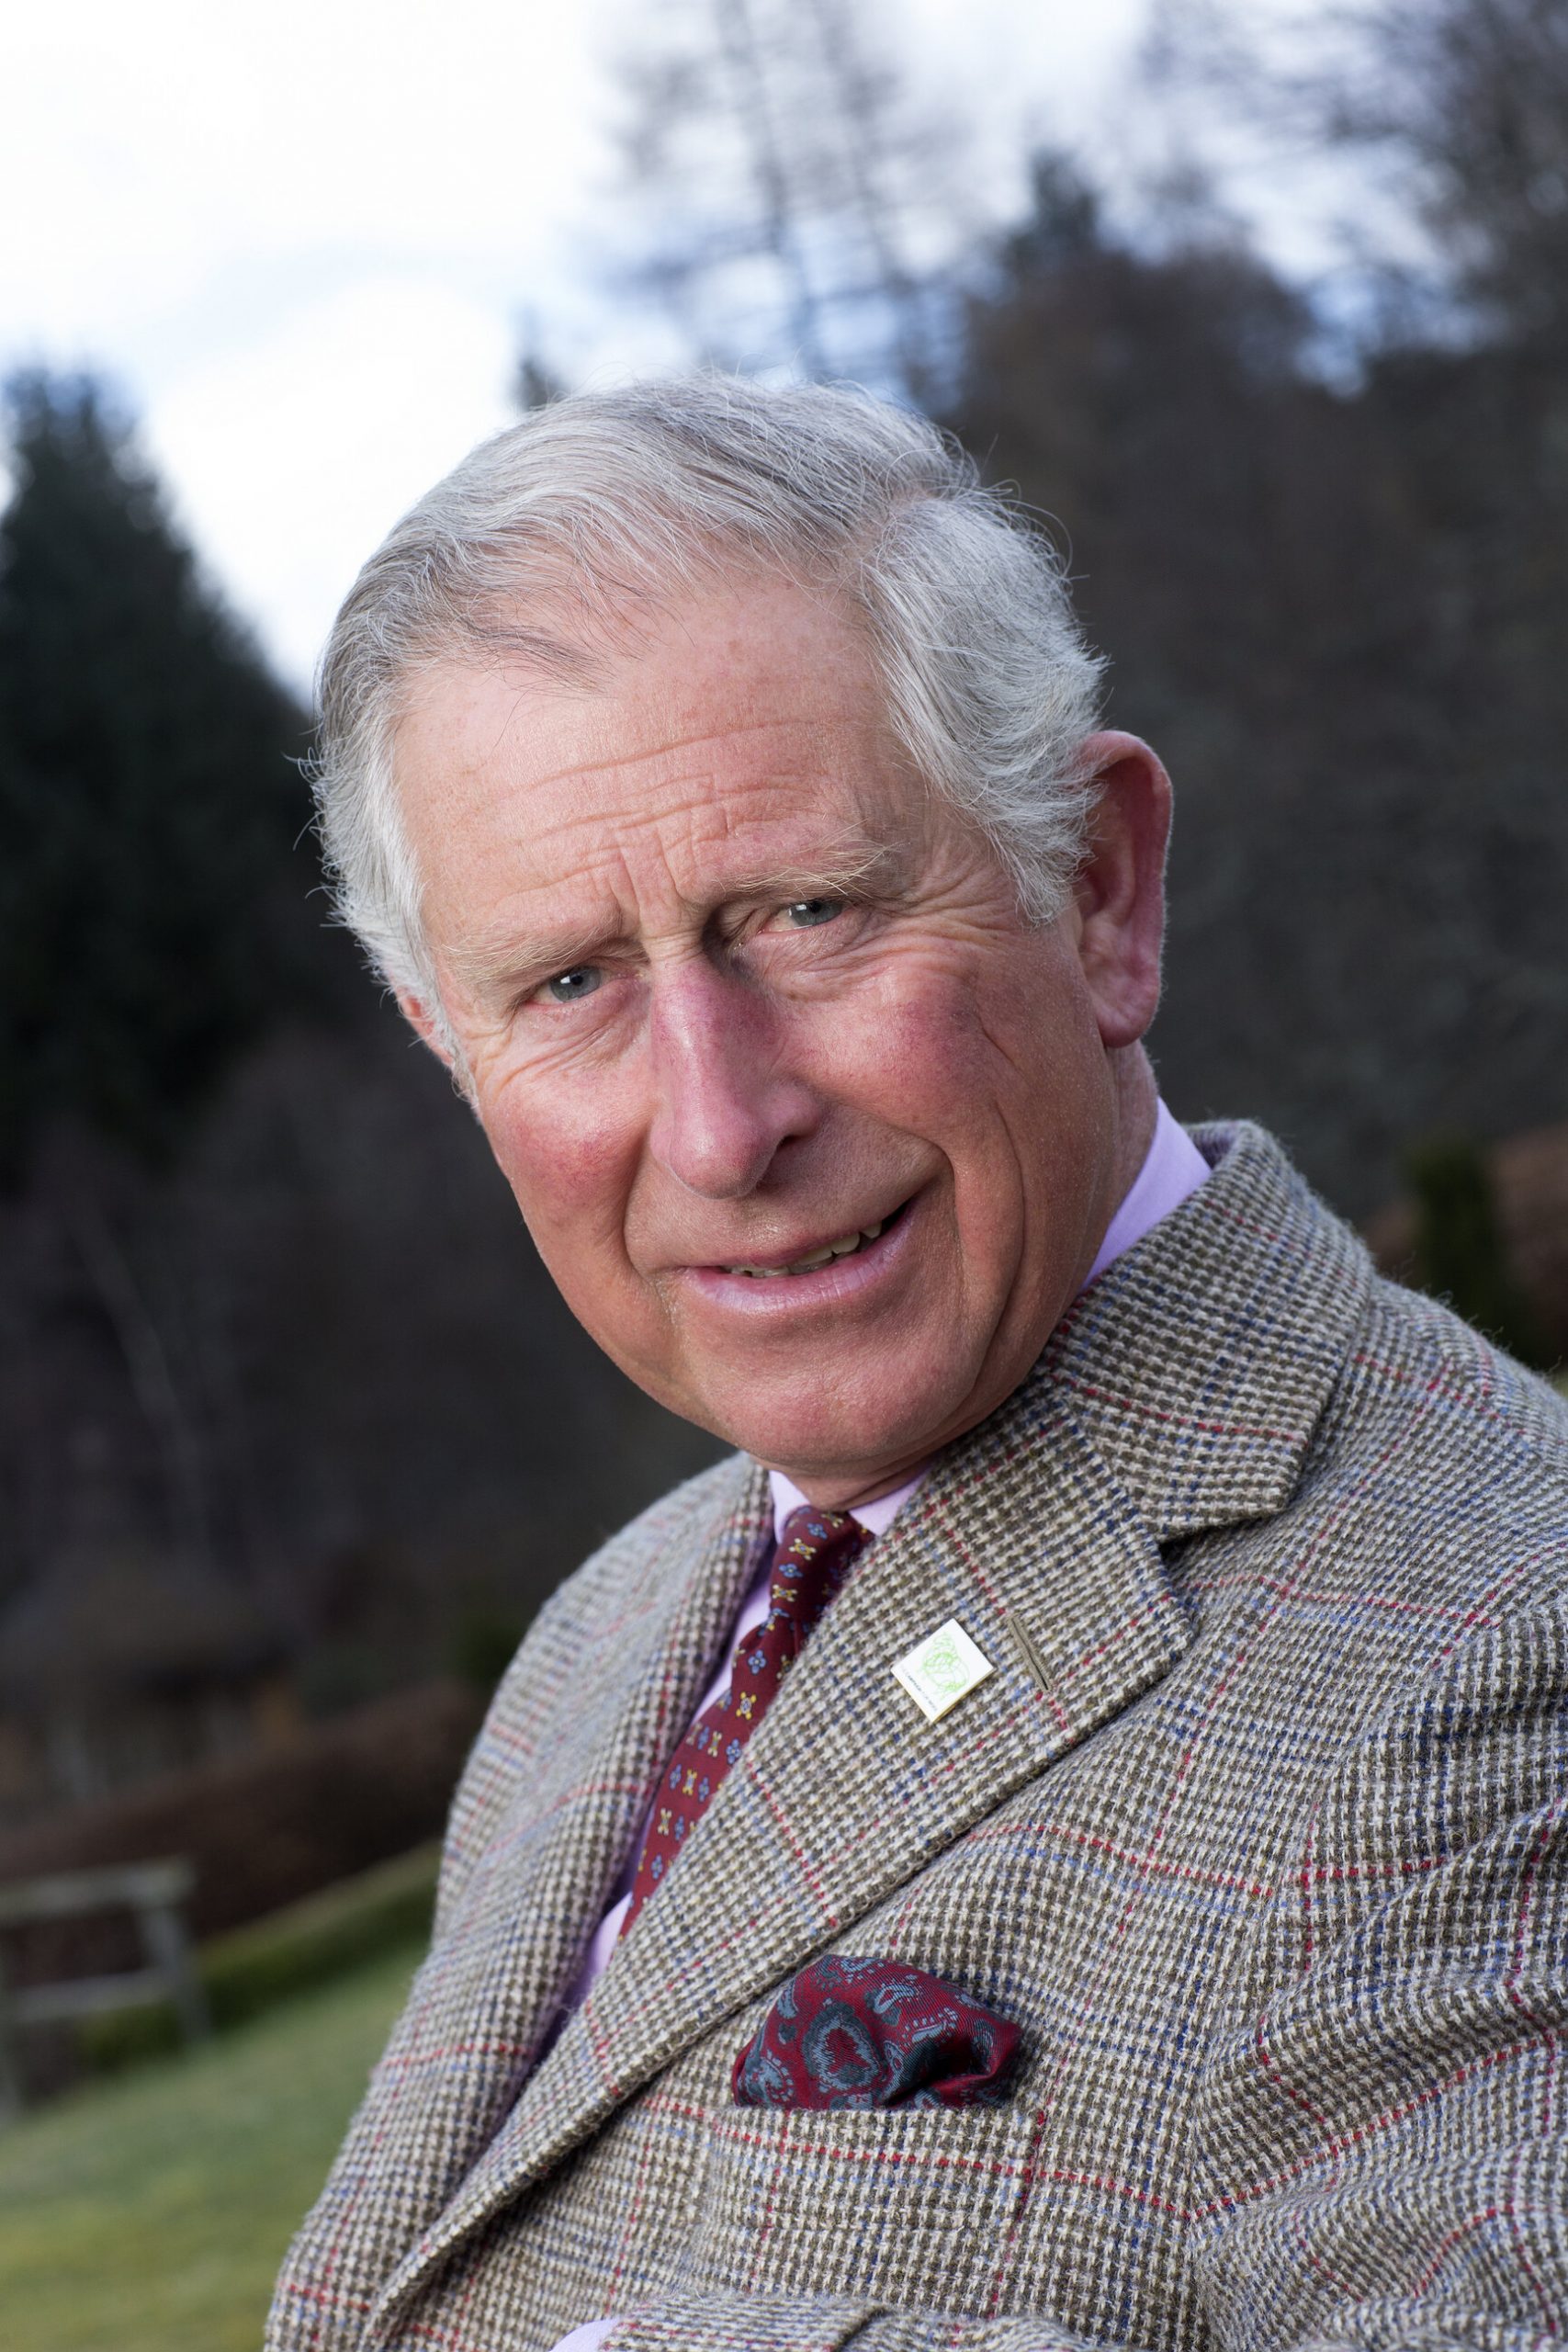 Prince of Wales Award 2021 seeks food heroes